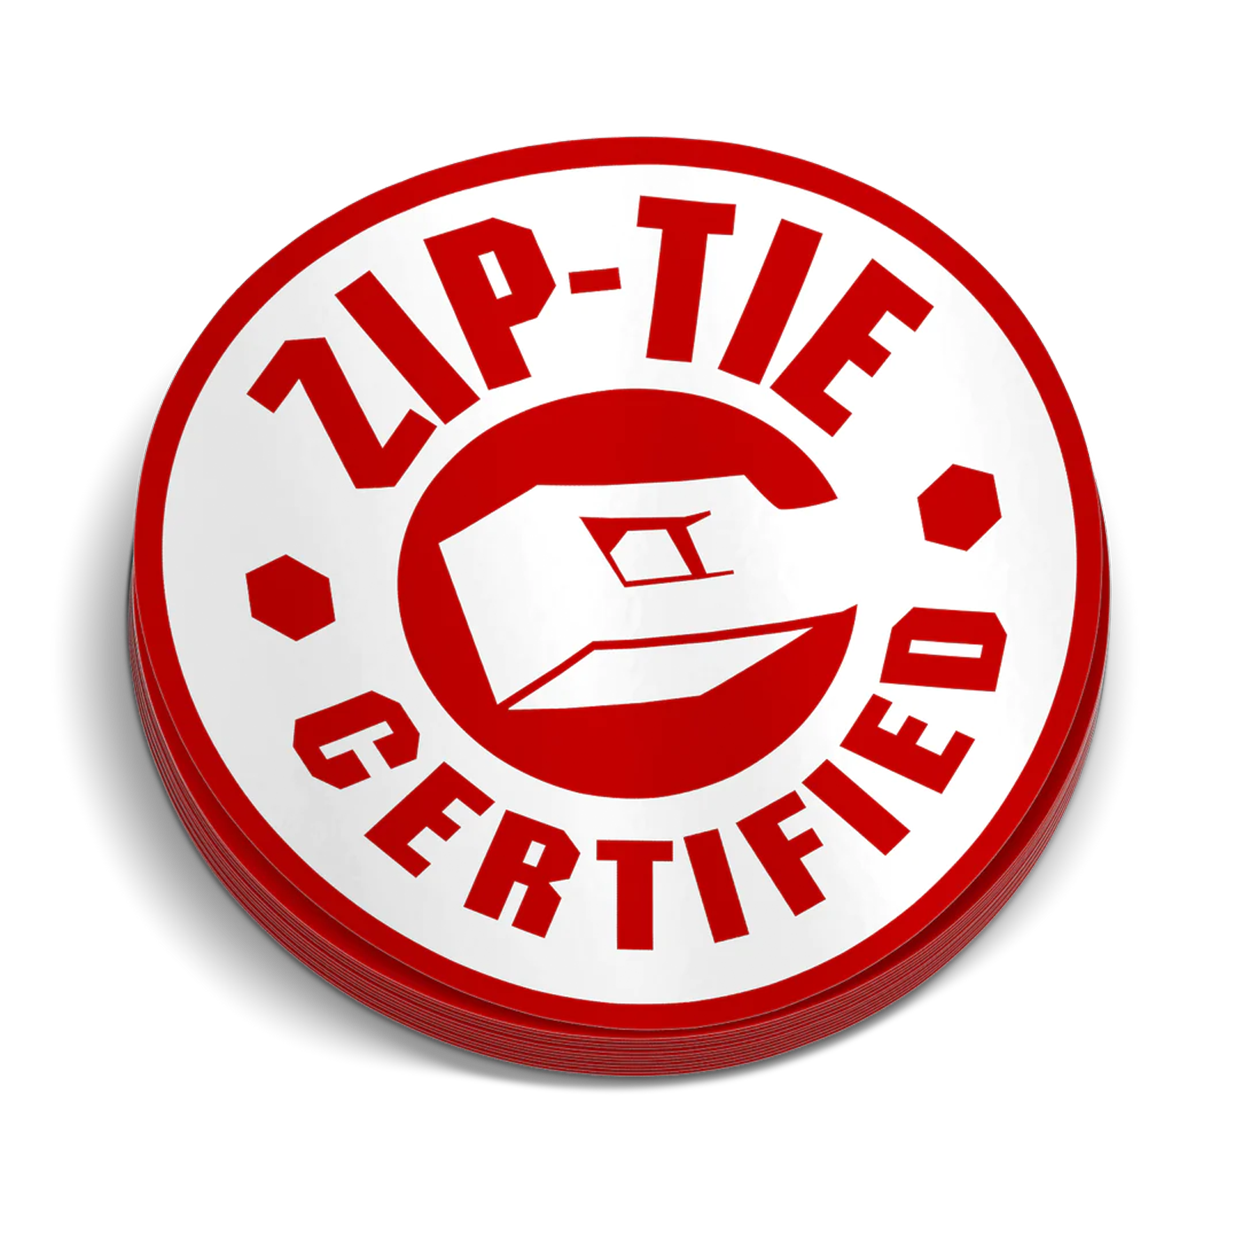 Zip Tie - Hard Hat Sticker